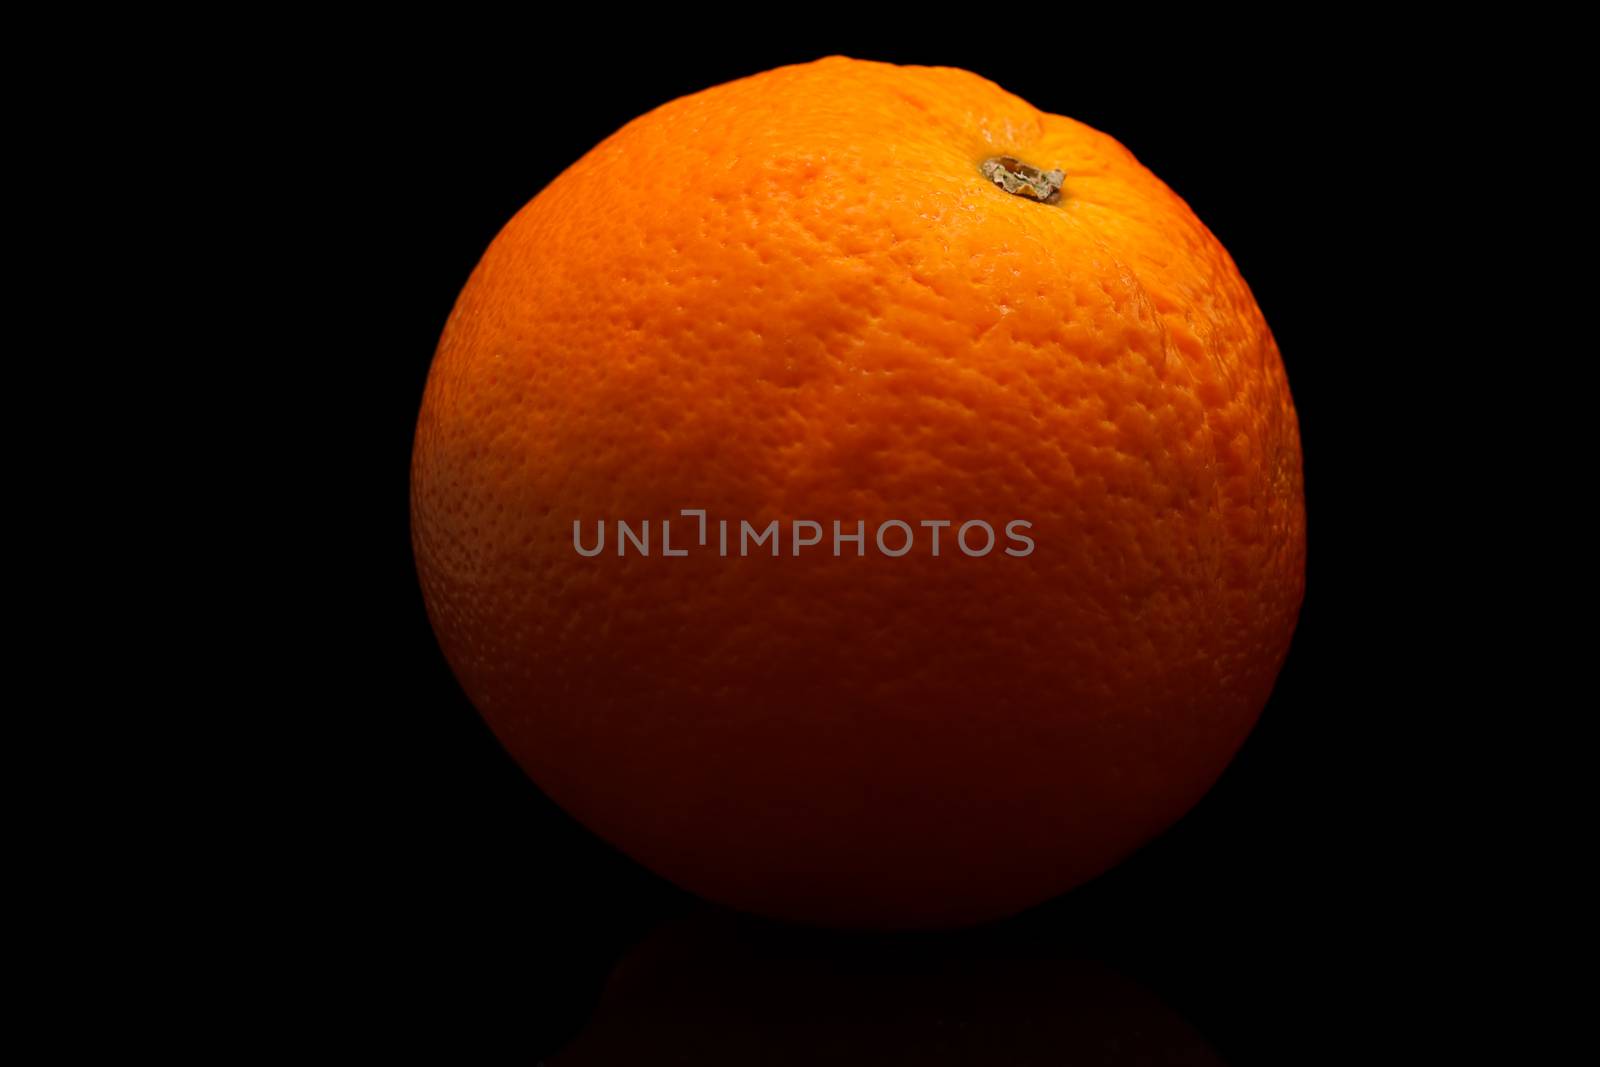 ripe orange on a black by baronvsp